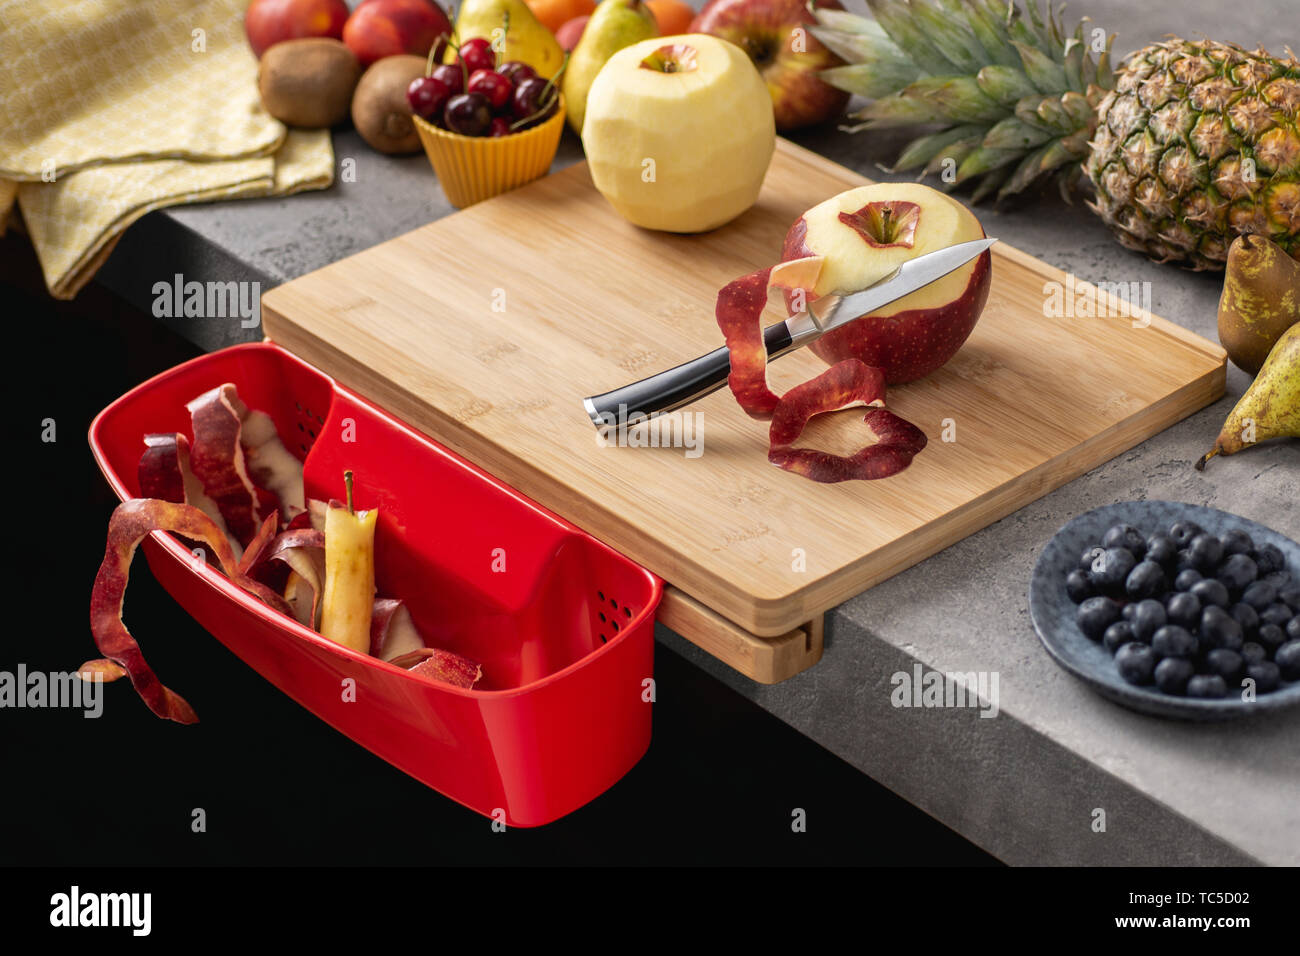 Holz Schneidebrett mit Behälter, Santoku Kochmesser und frisches Obst.  Gesunde Ernährung Konzept Stockfotografie - Alamy